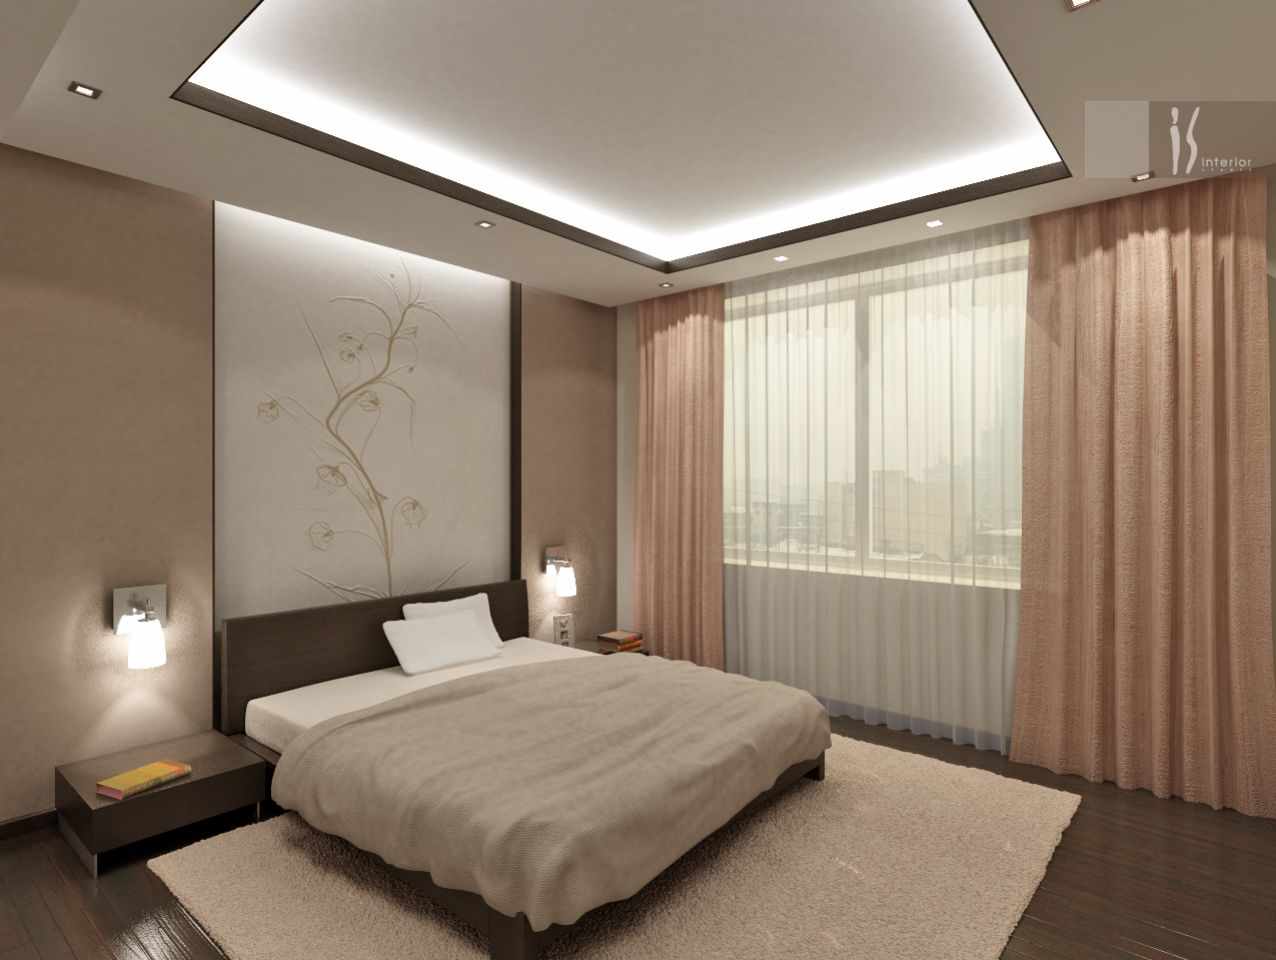 Een voorbeeld van een mooi ontwerp in de stijl van een slaapkamer